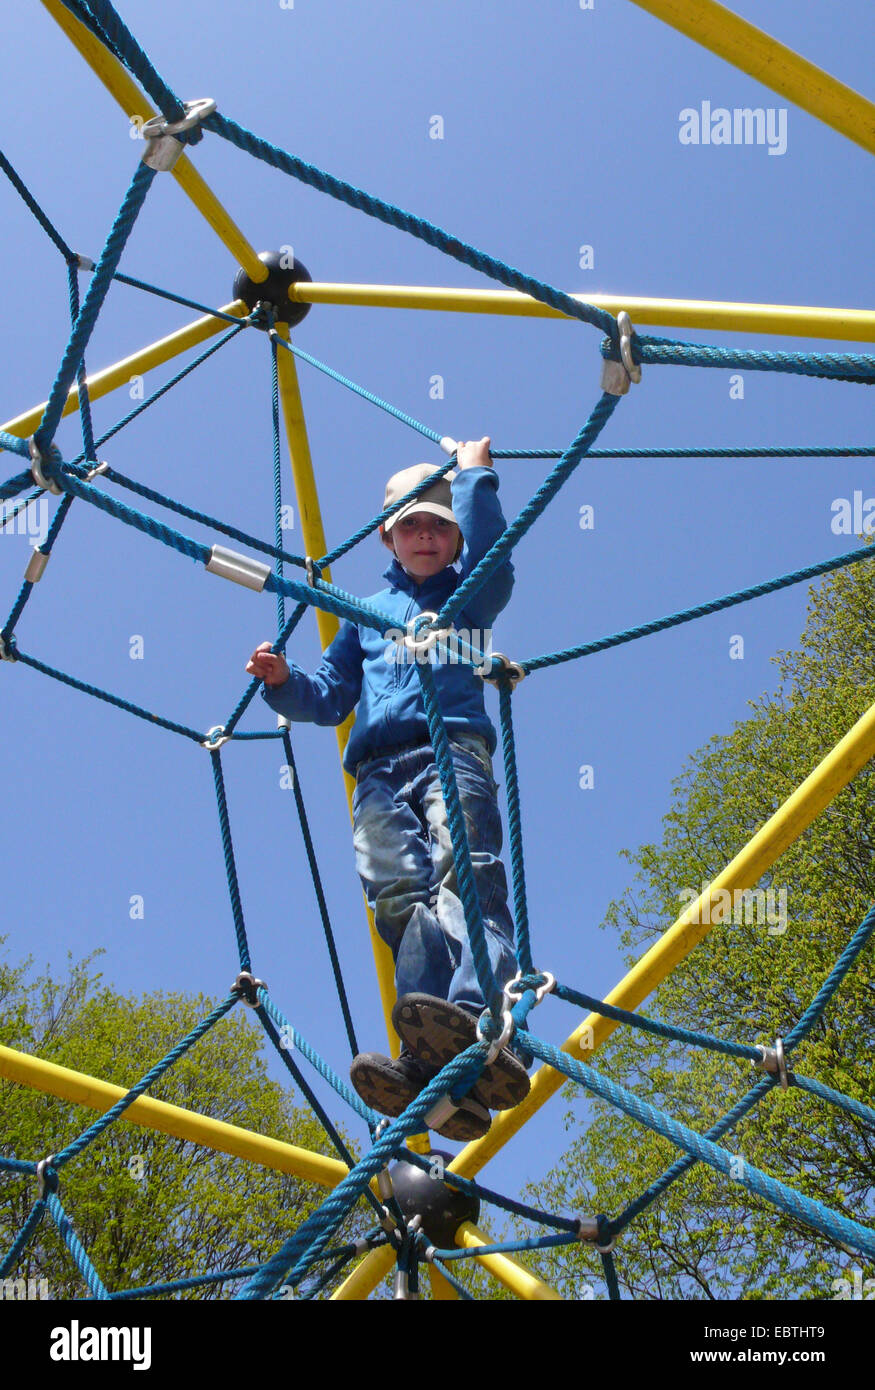 kleiner Junge auf einen kletternden Apparat auf einem Spielplatz Stockfoto